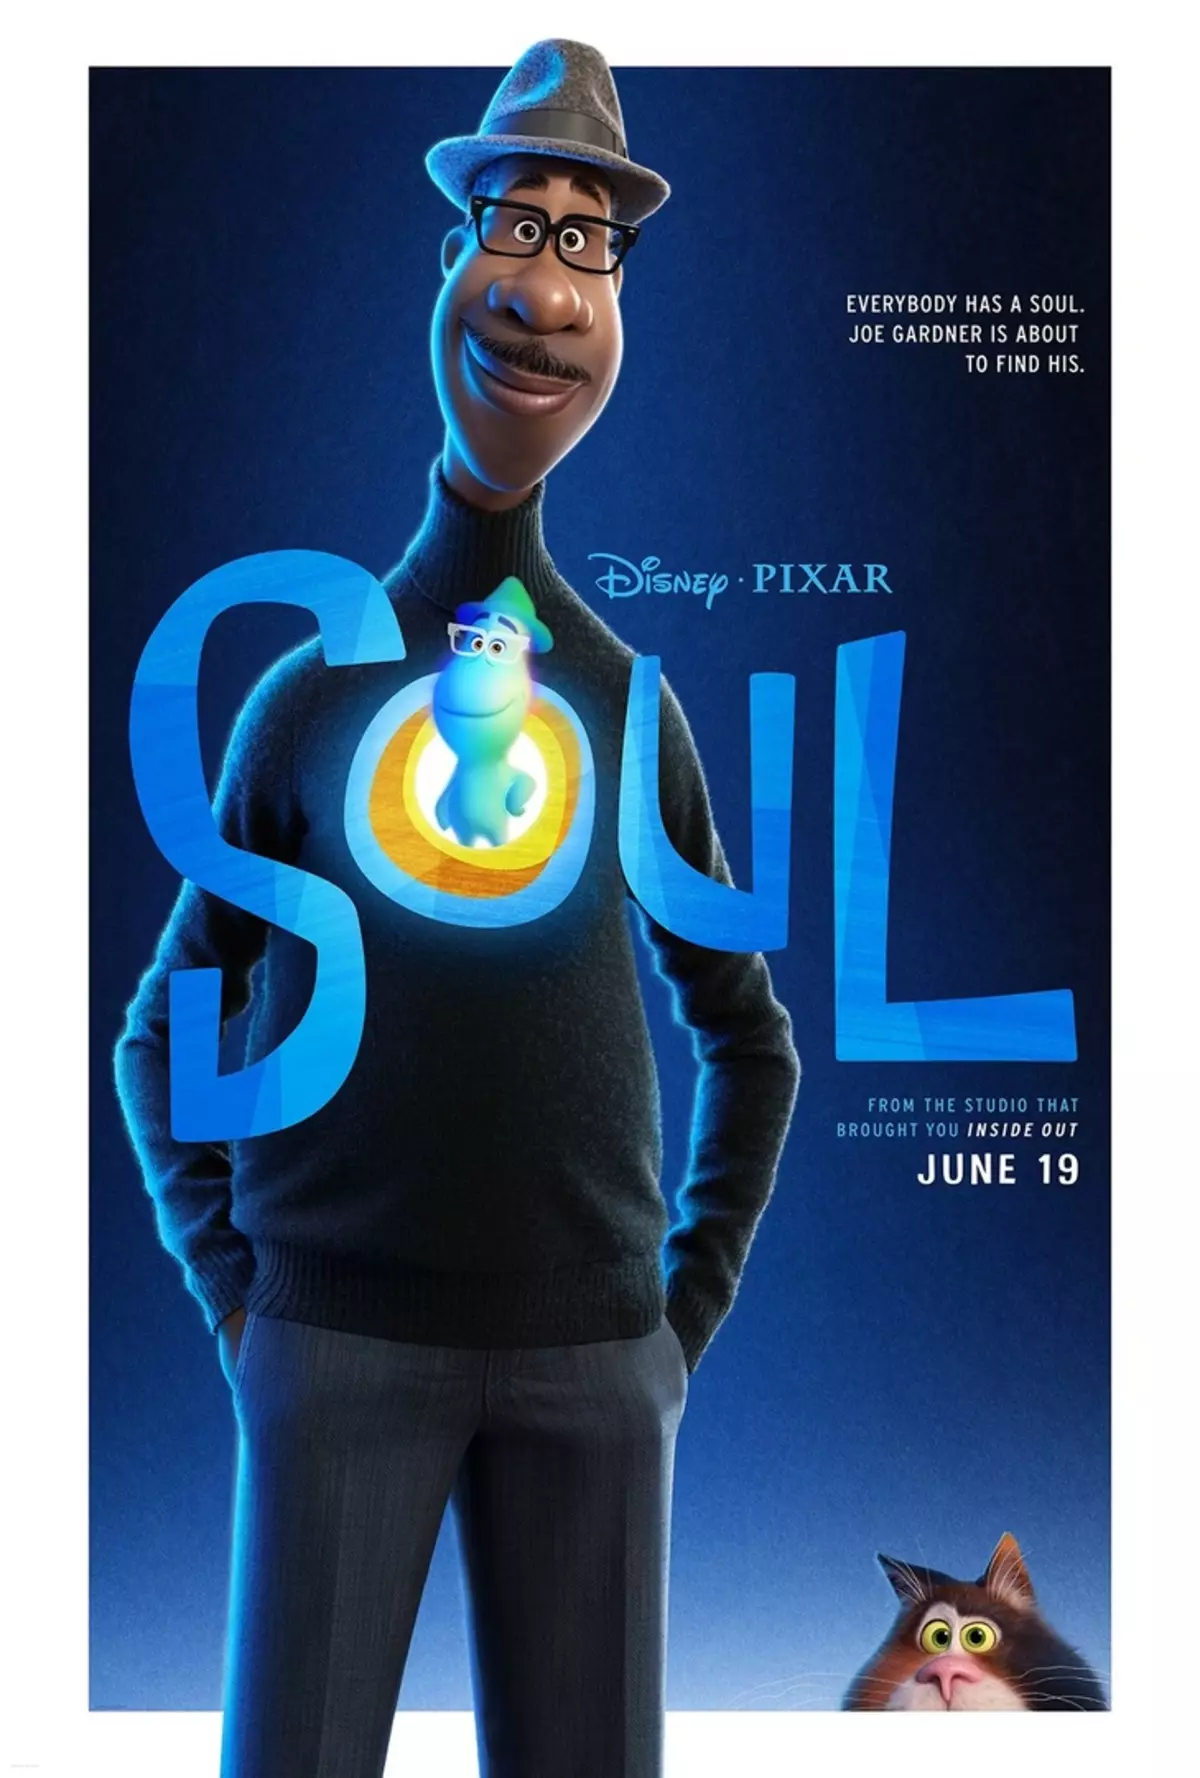 Studio Pixar zaprezentował przyczepę dla nowej kreskówki 